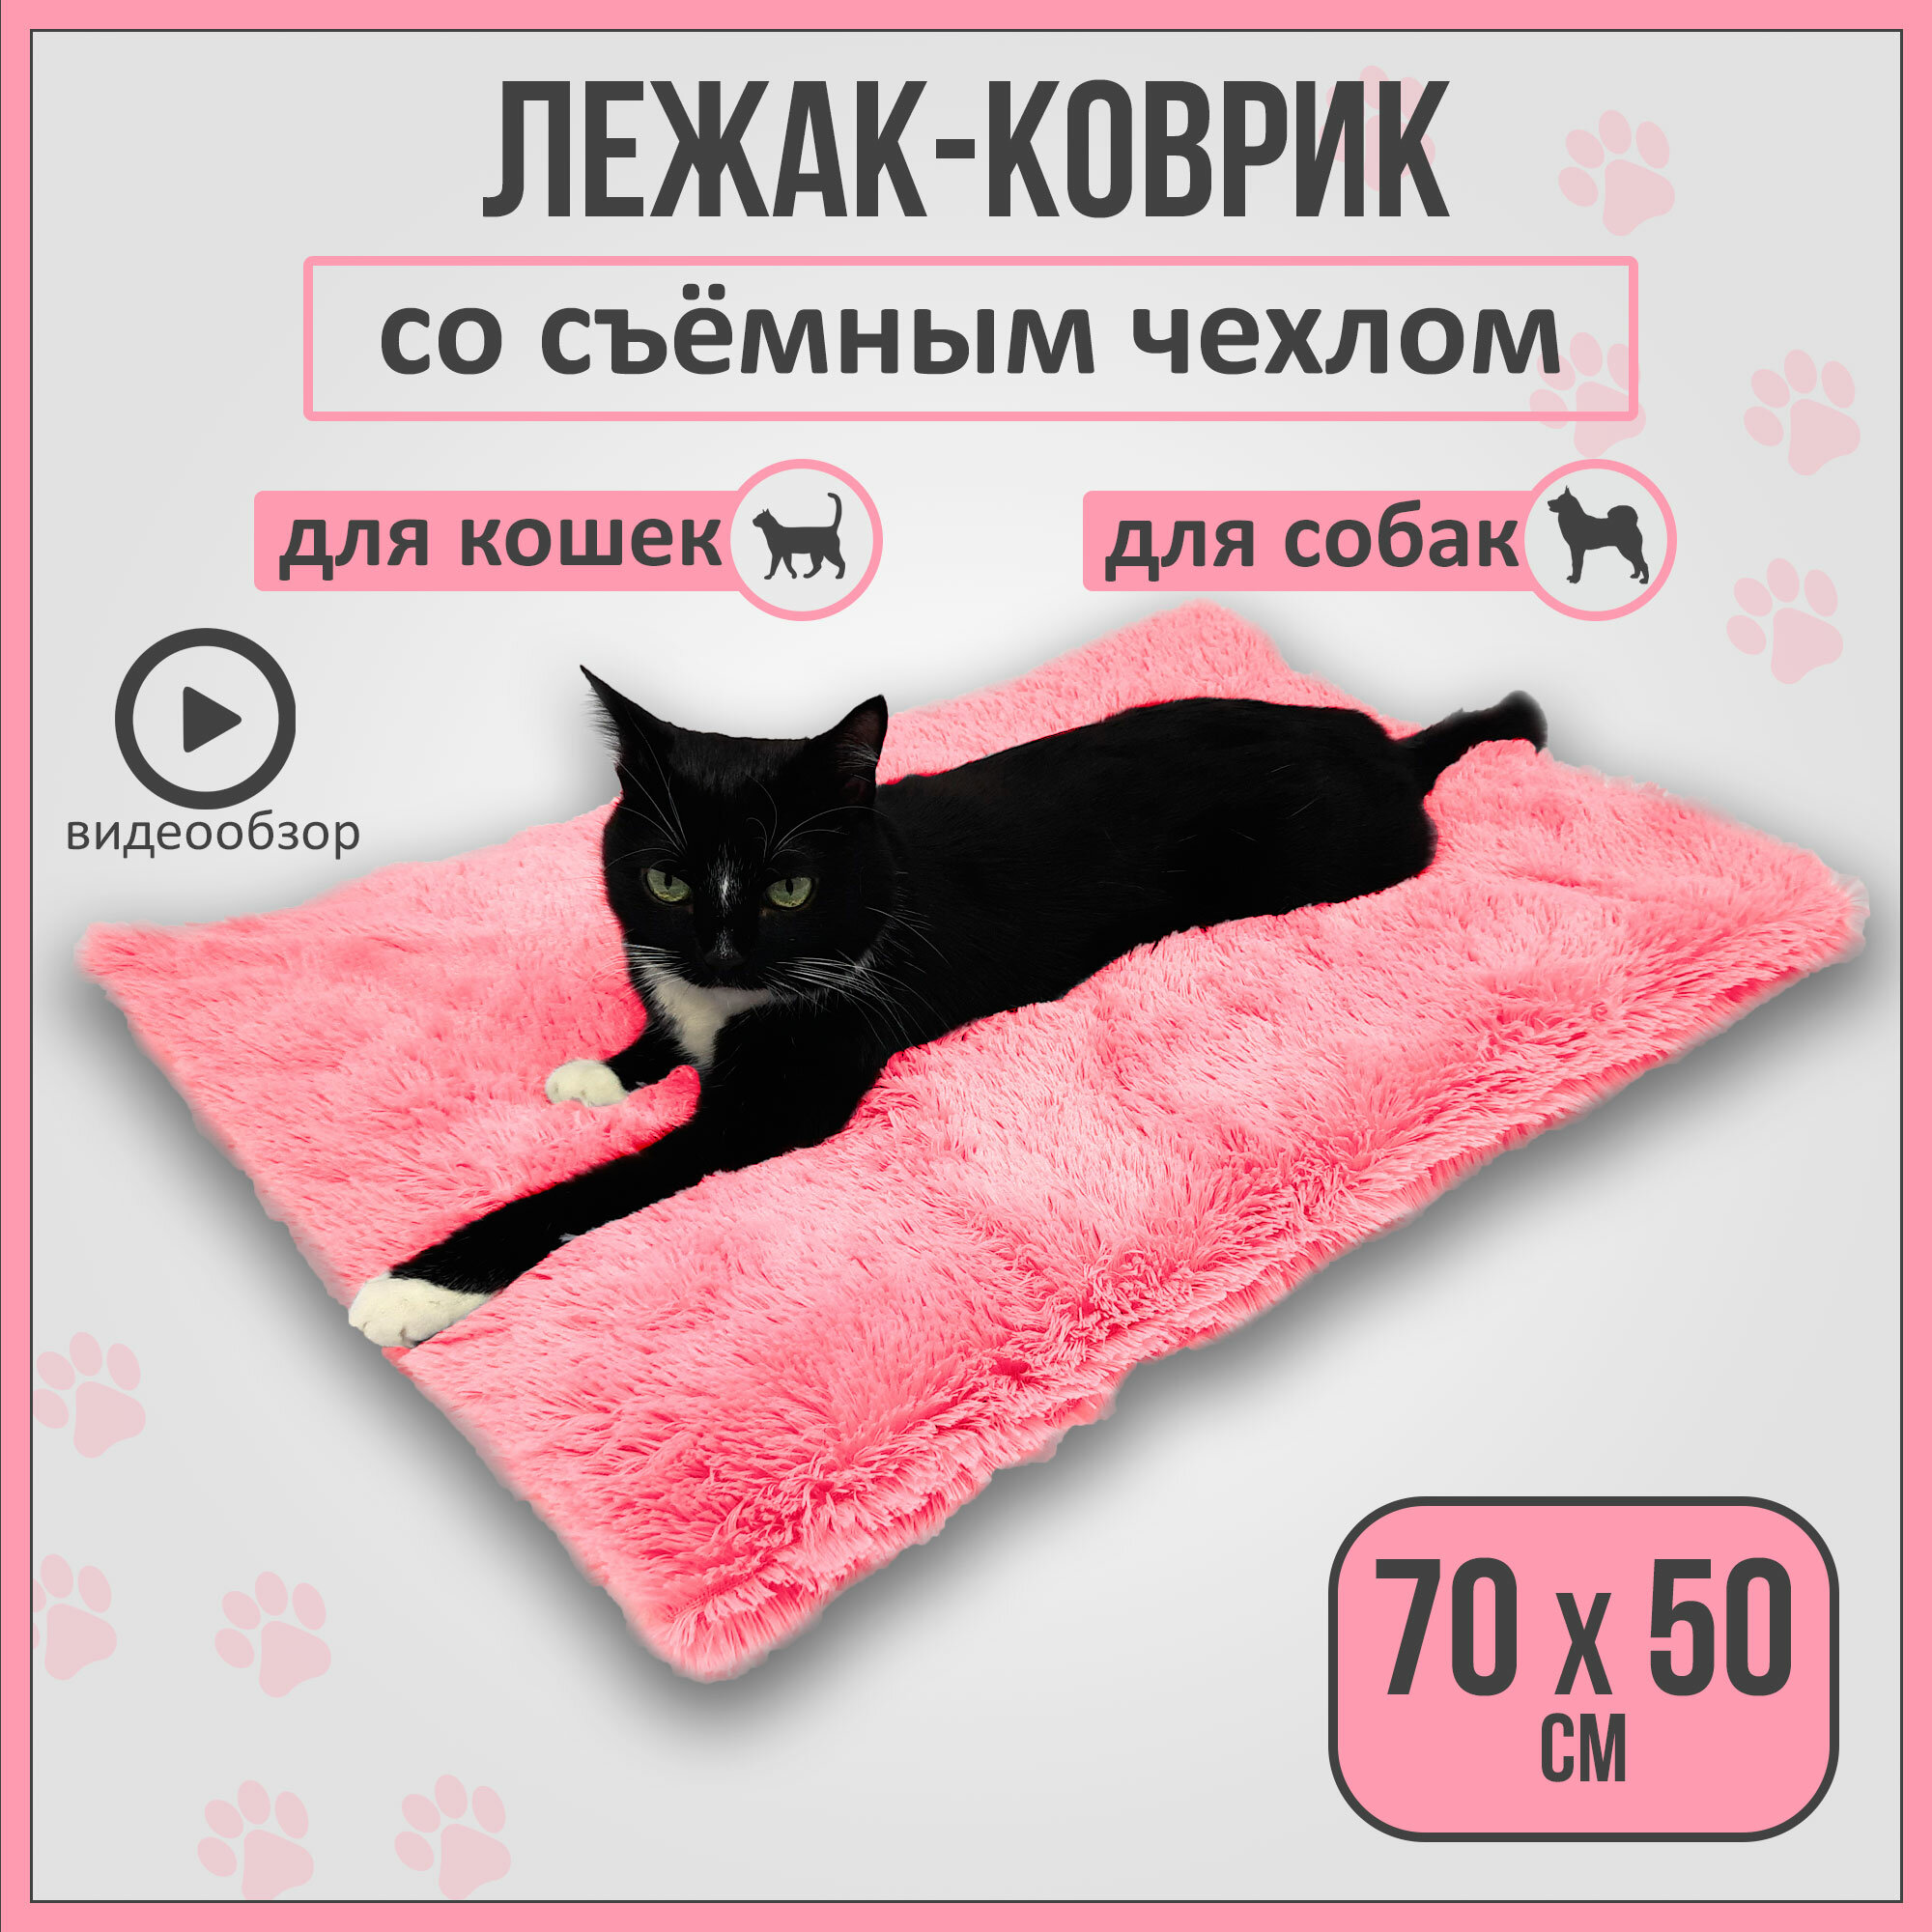 Лежанка коврик для кошек и собак со съемным чехлом, розовая - фотография № 1